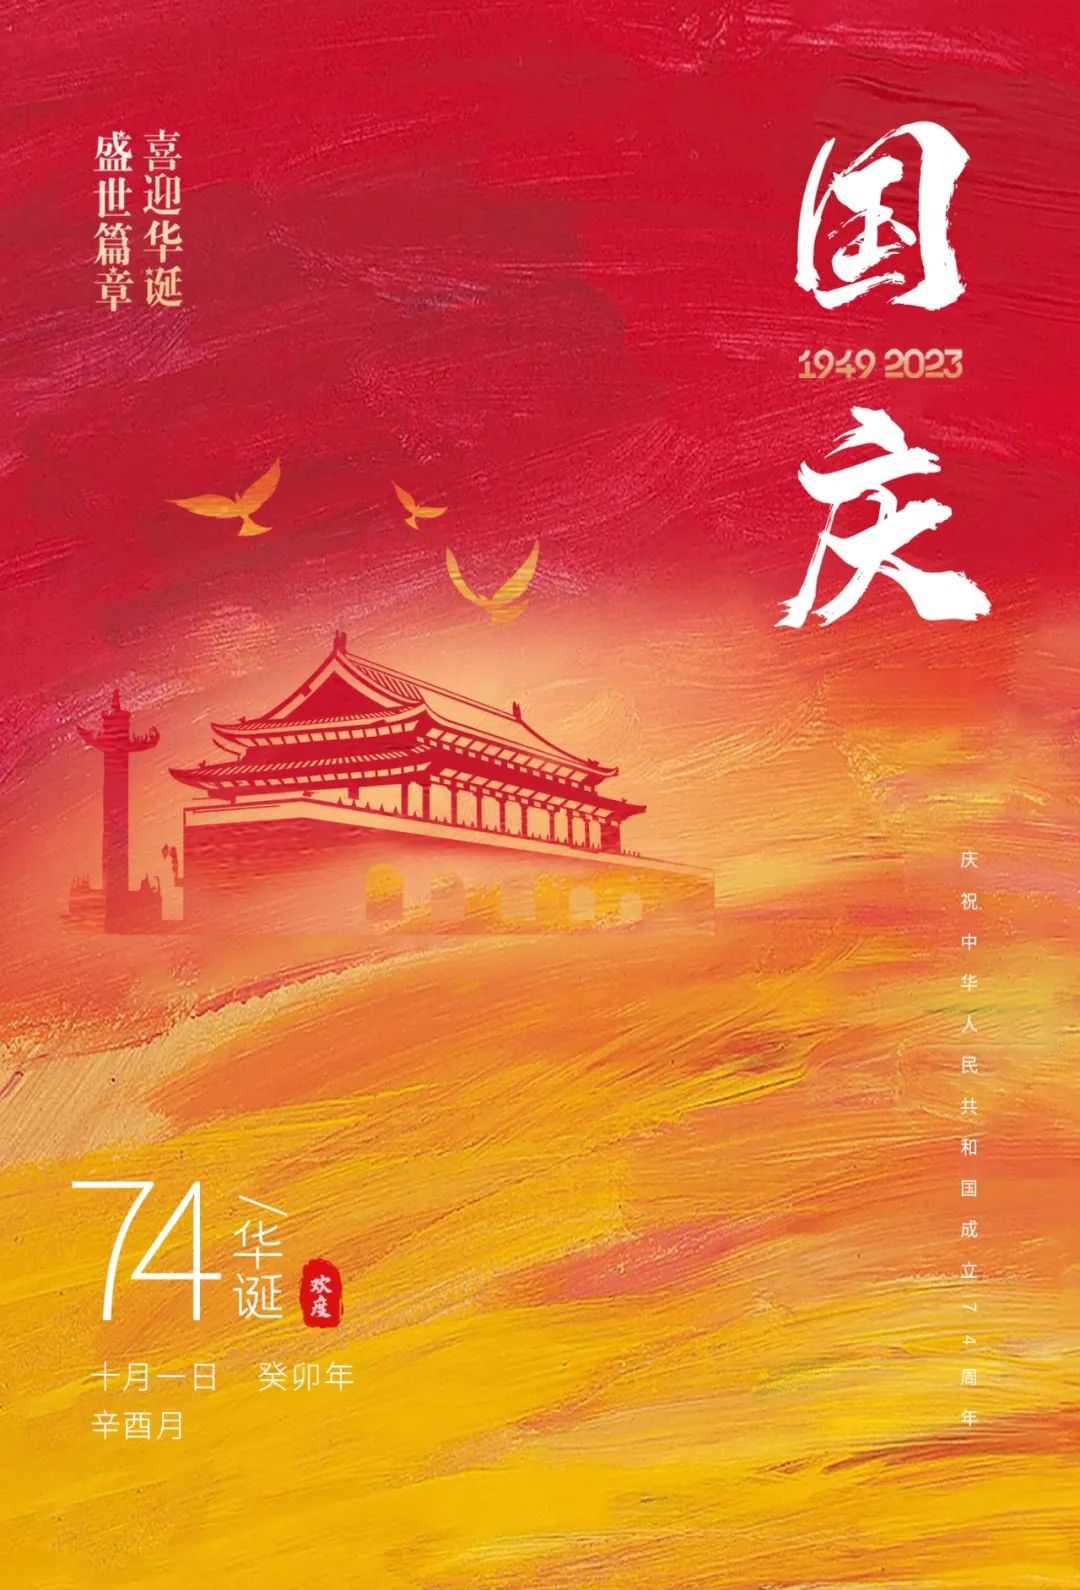 盛世华诞，家国同梦，申博太阳城环保集团祝各人国庆节快乐！